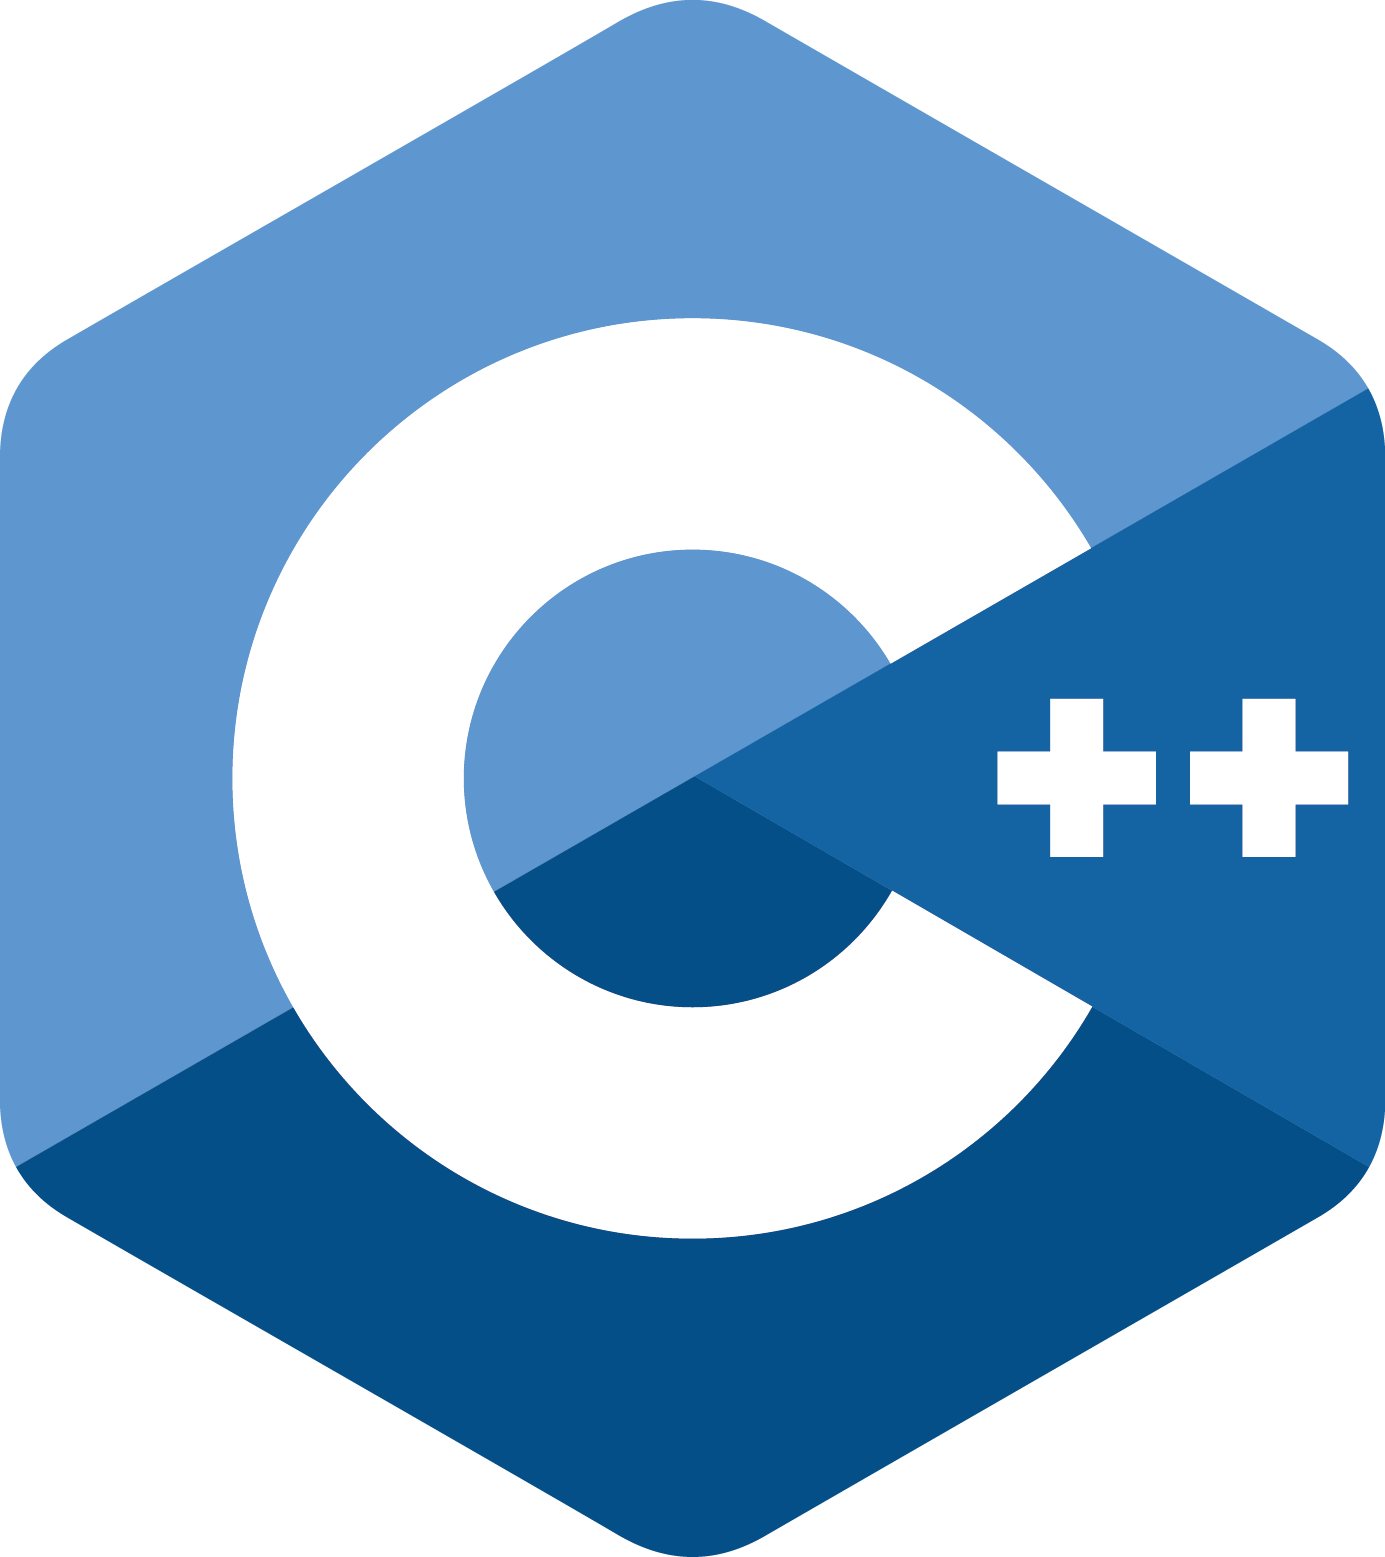 Belajar CPP : Download dan Install Dev C++